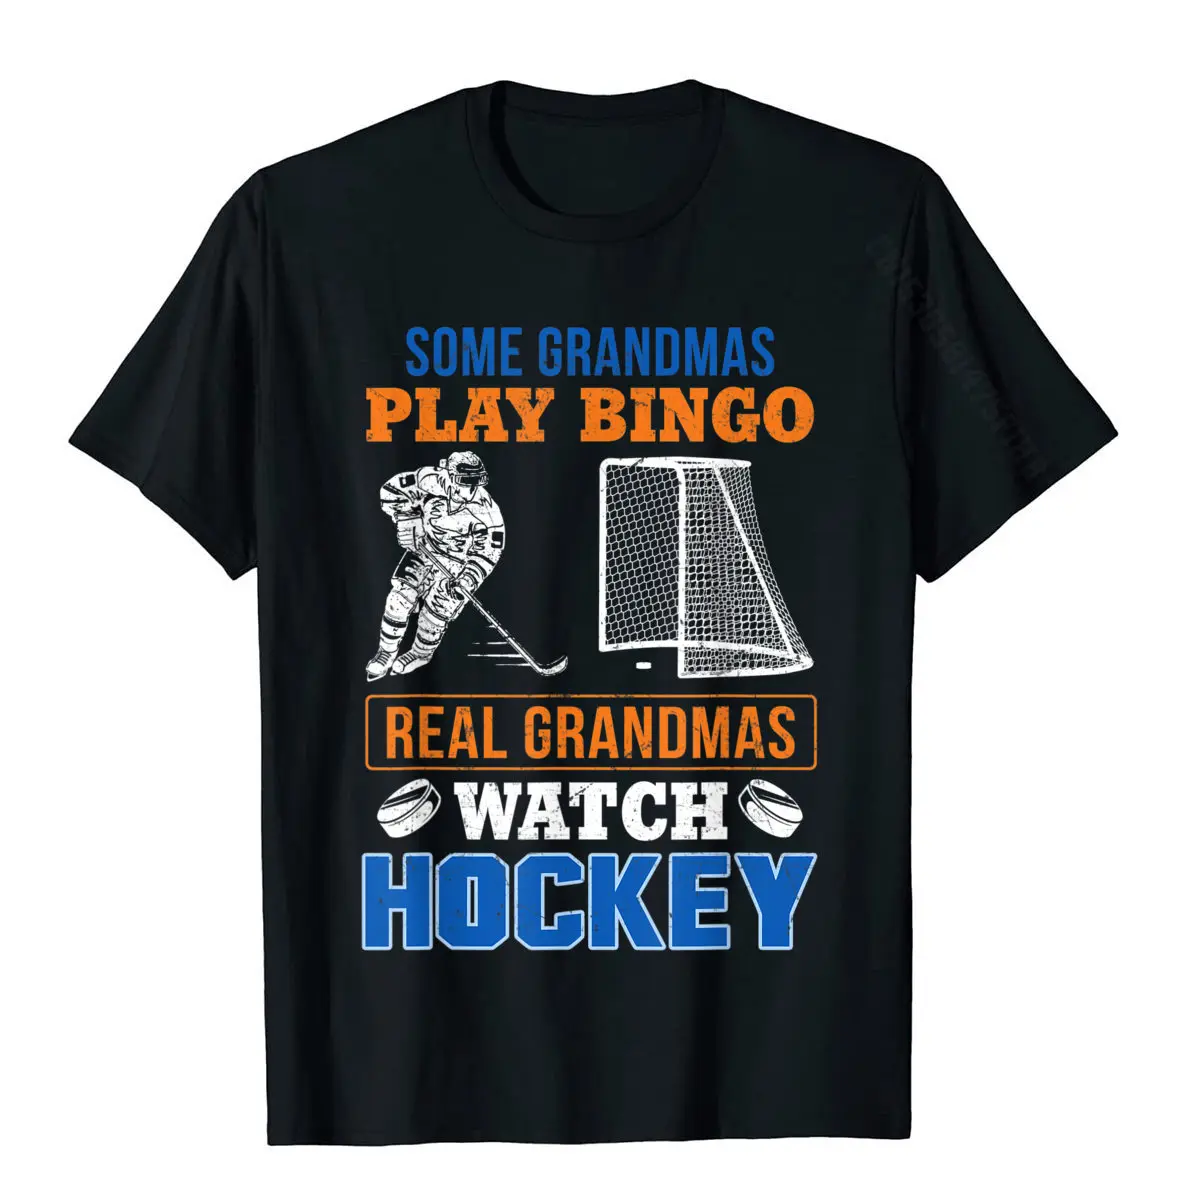 Some Grandmas Play Bingo Real Grandmas Watch Hockey T-Shirt Faddish Boy Tshirts Cotton Tops & Tees Custom